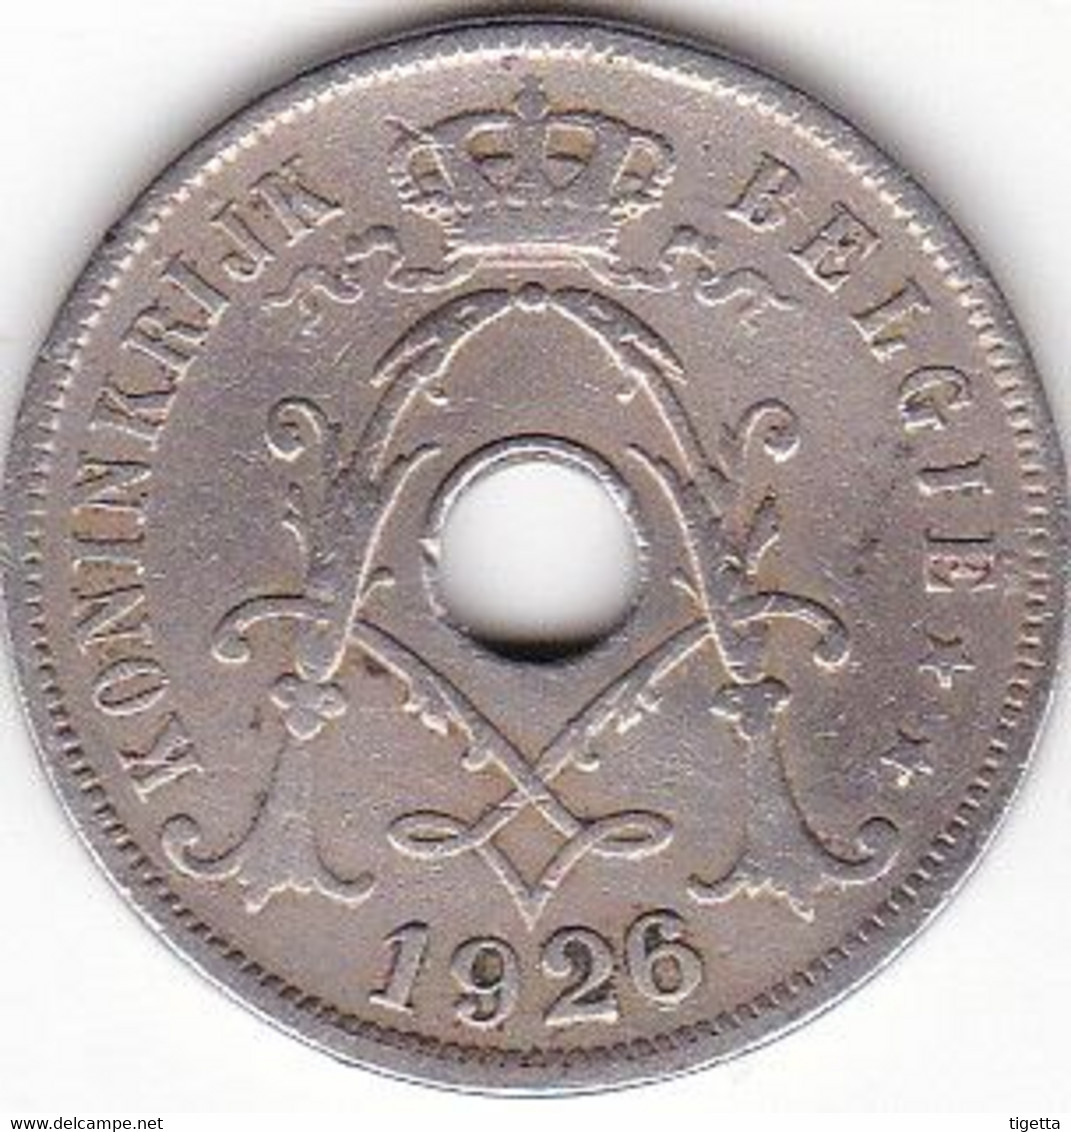 BELGIO 25 CENTS  ANNO 1926 - 25 Centimes